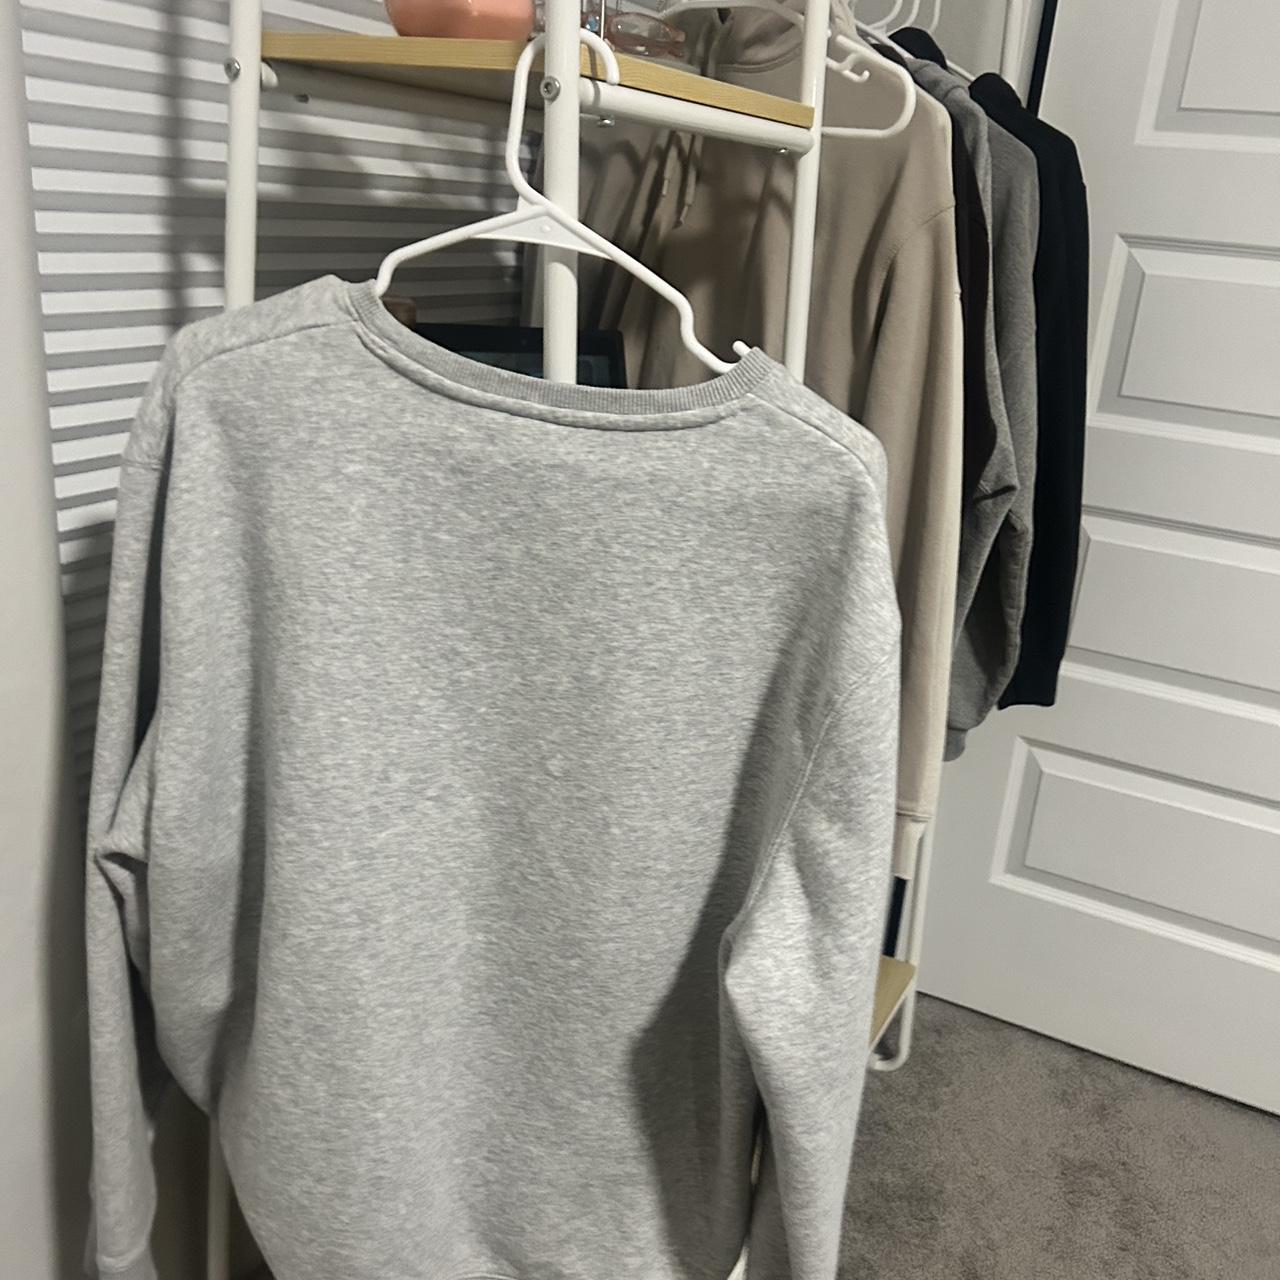 Costco Women's Grey Sweatshirt (2)